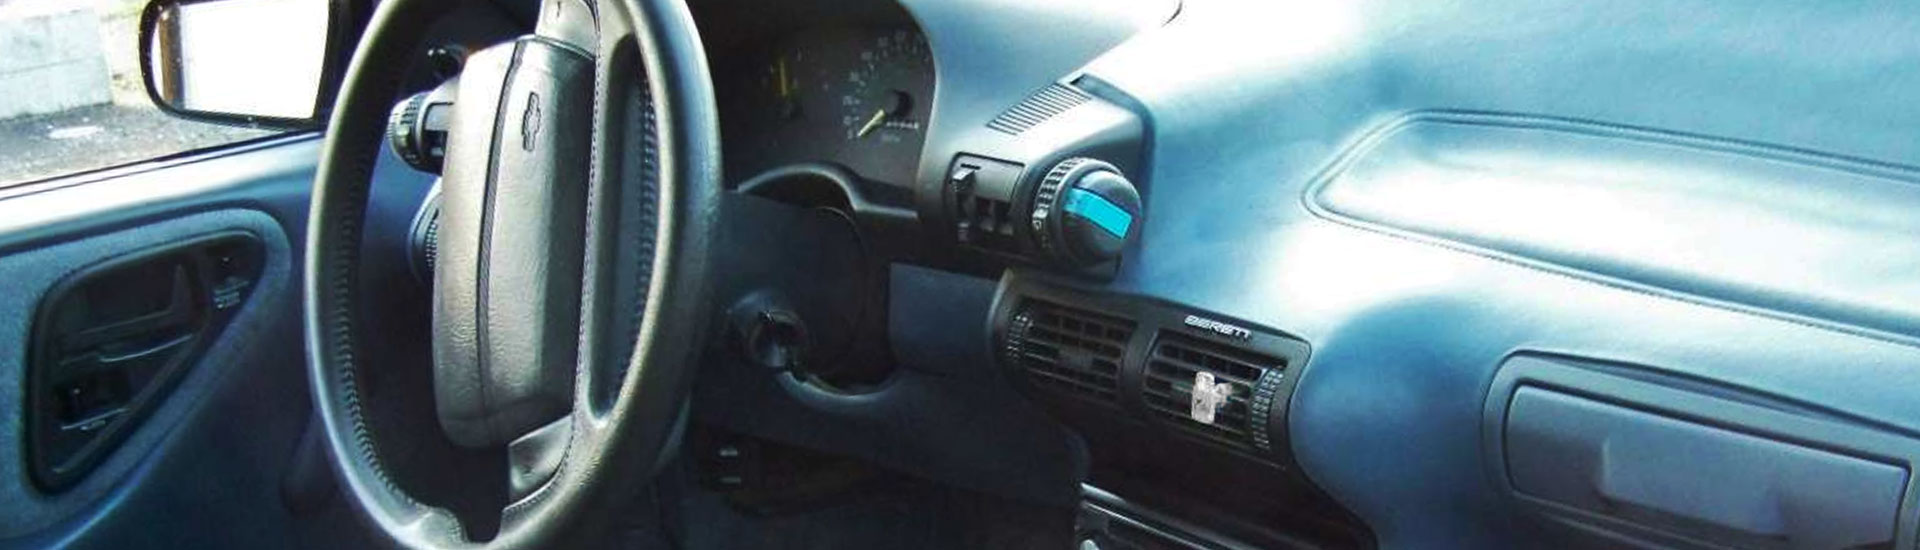 Chevrolet Beretta Dash Kits